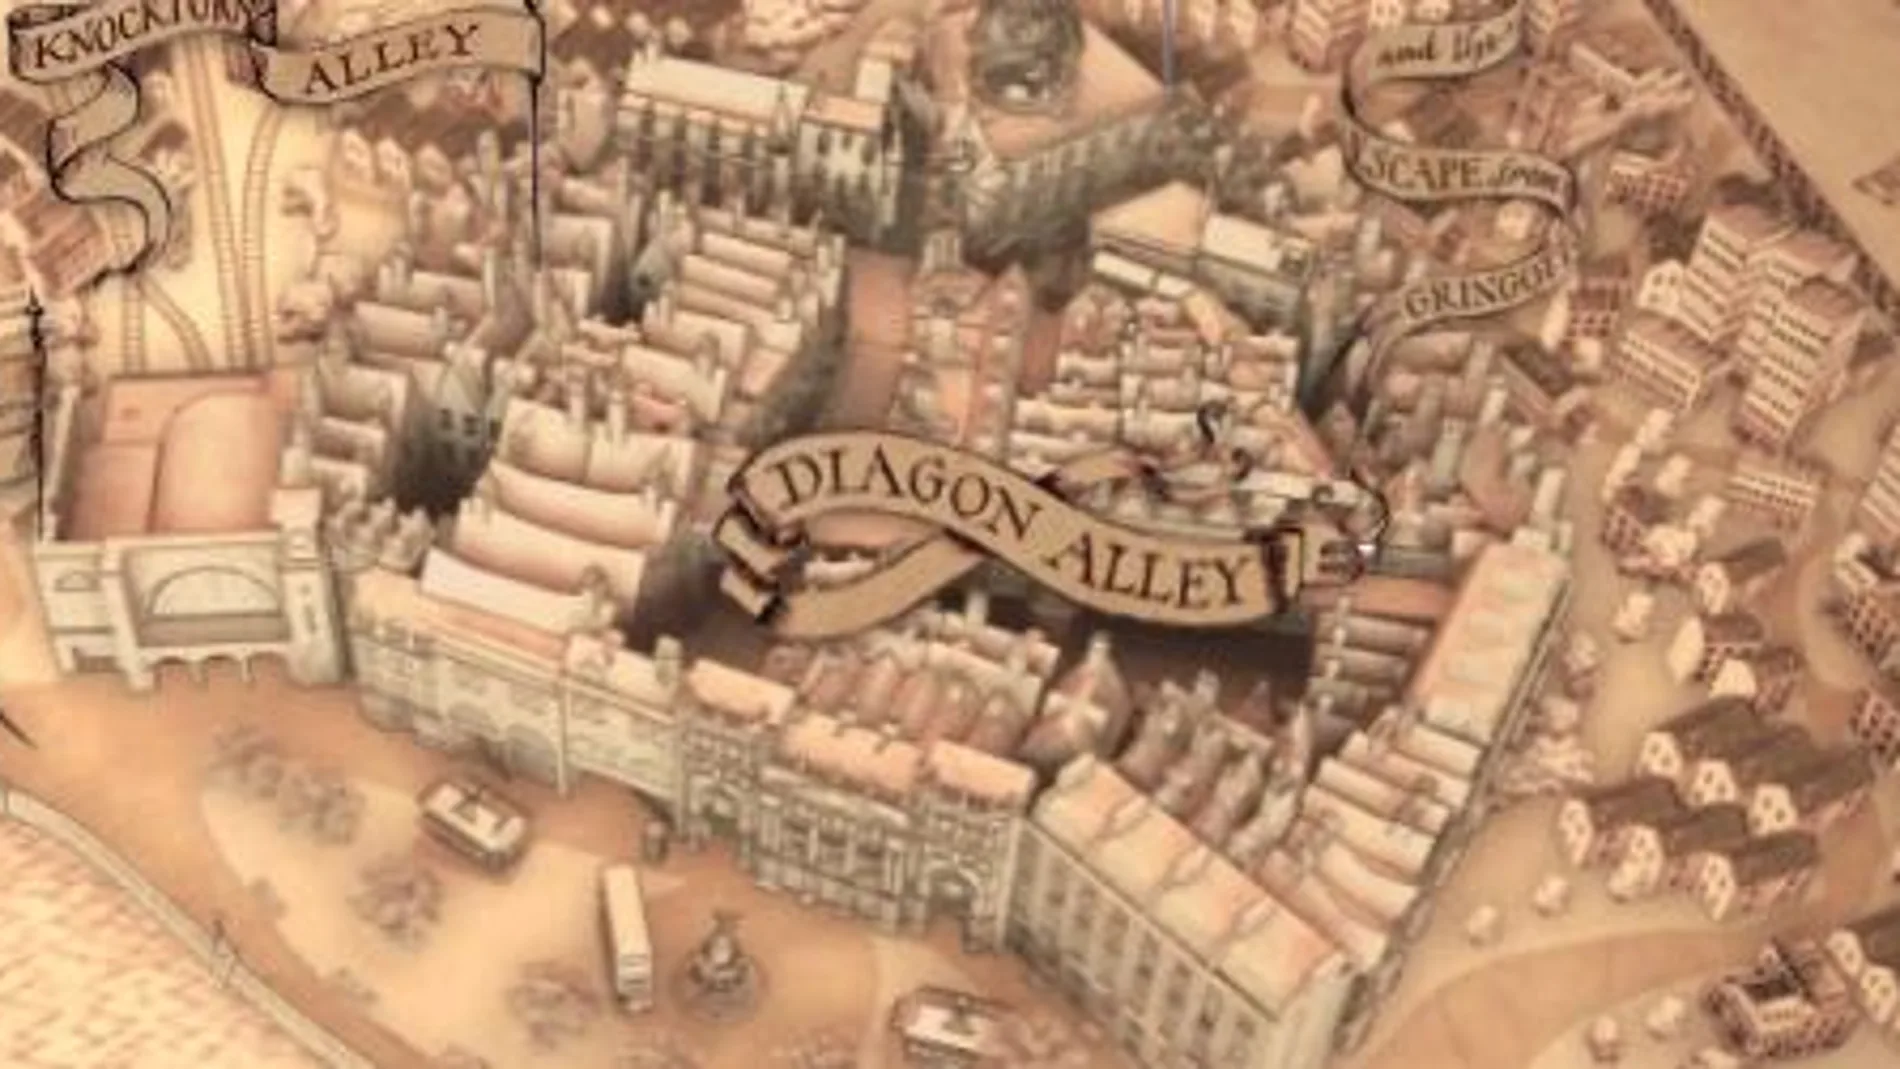 Captura del mapa de Diagon Alley